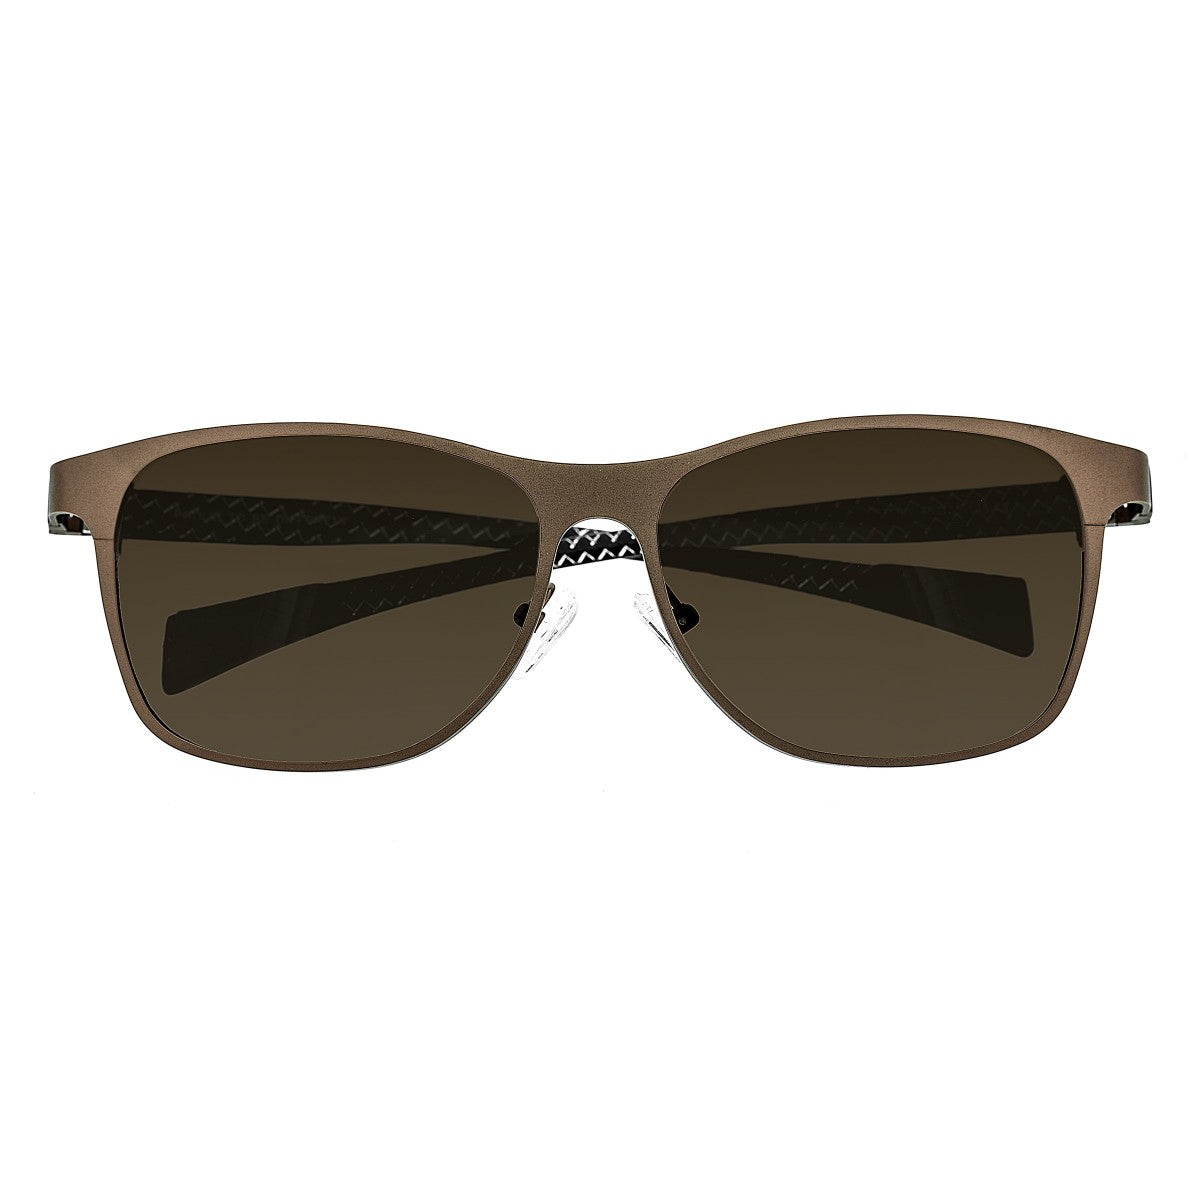 Breed Templar Titanium Polarized Sunglasses - Brown/Brown - BSG035BN